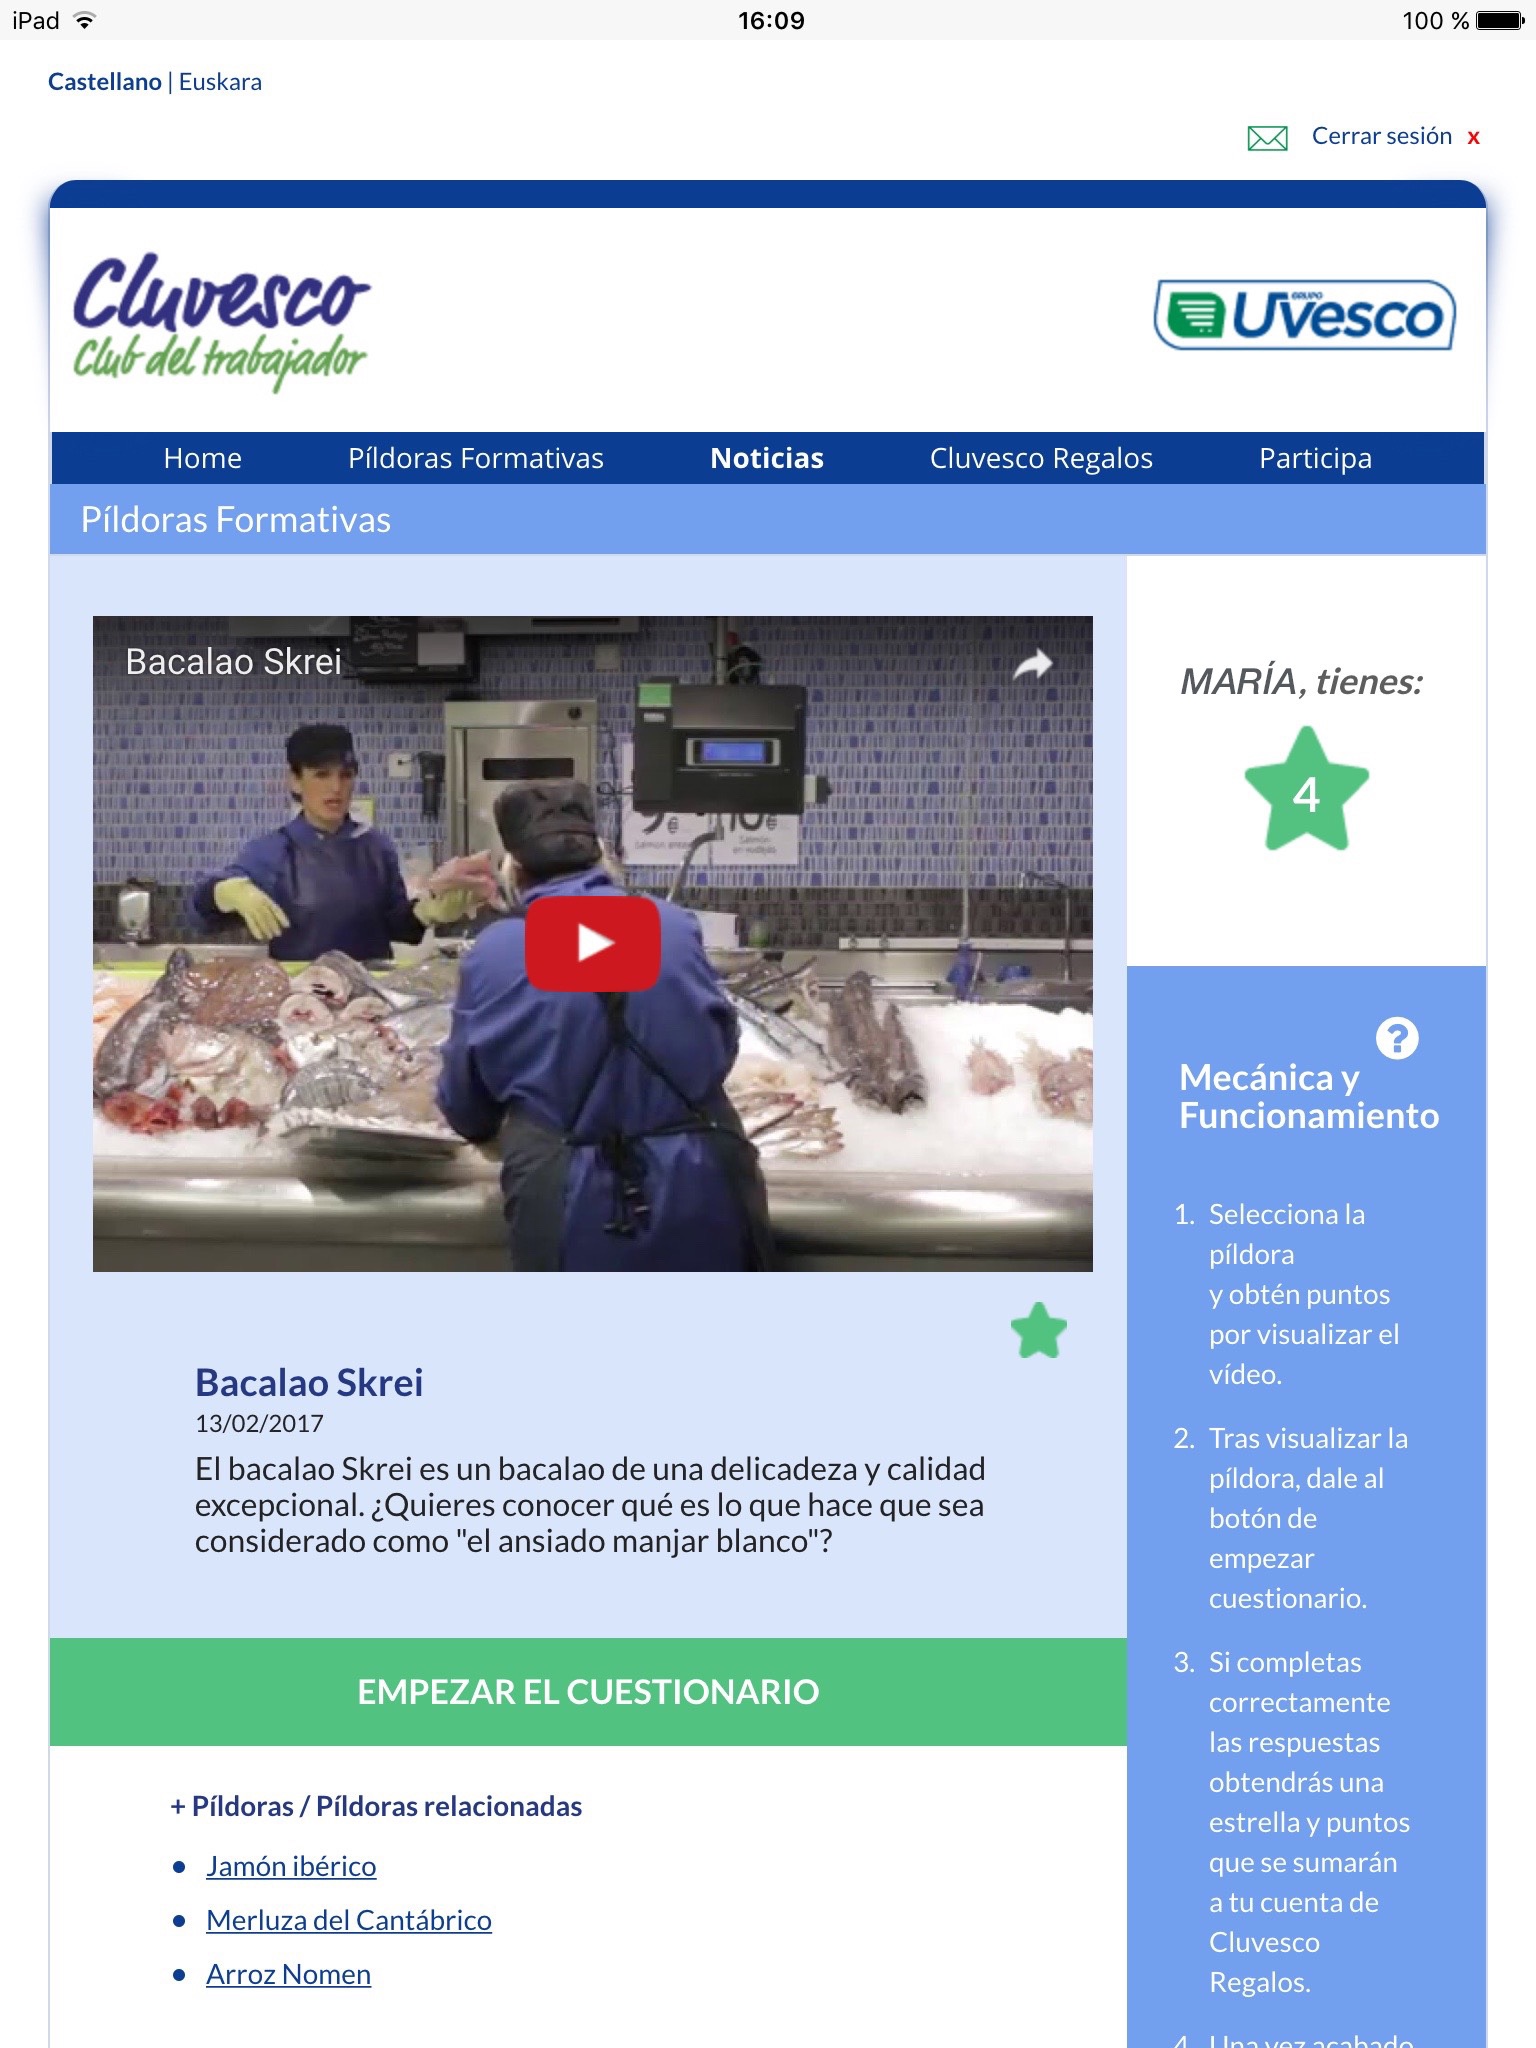 CLUVESCO Trabajadores screenshot 3